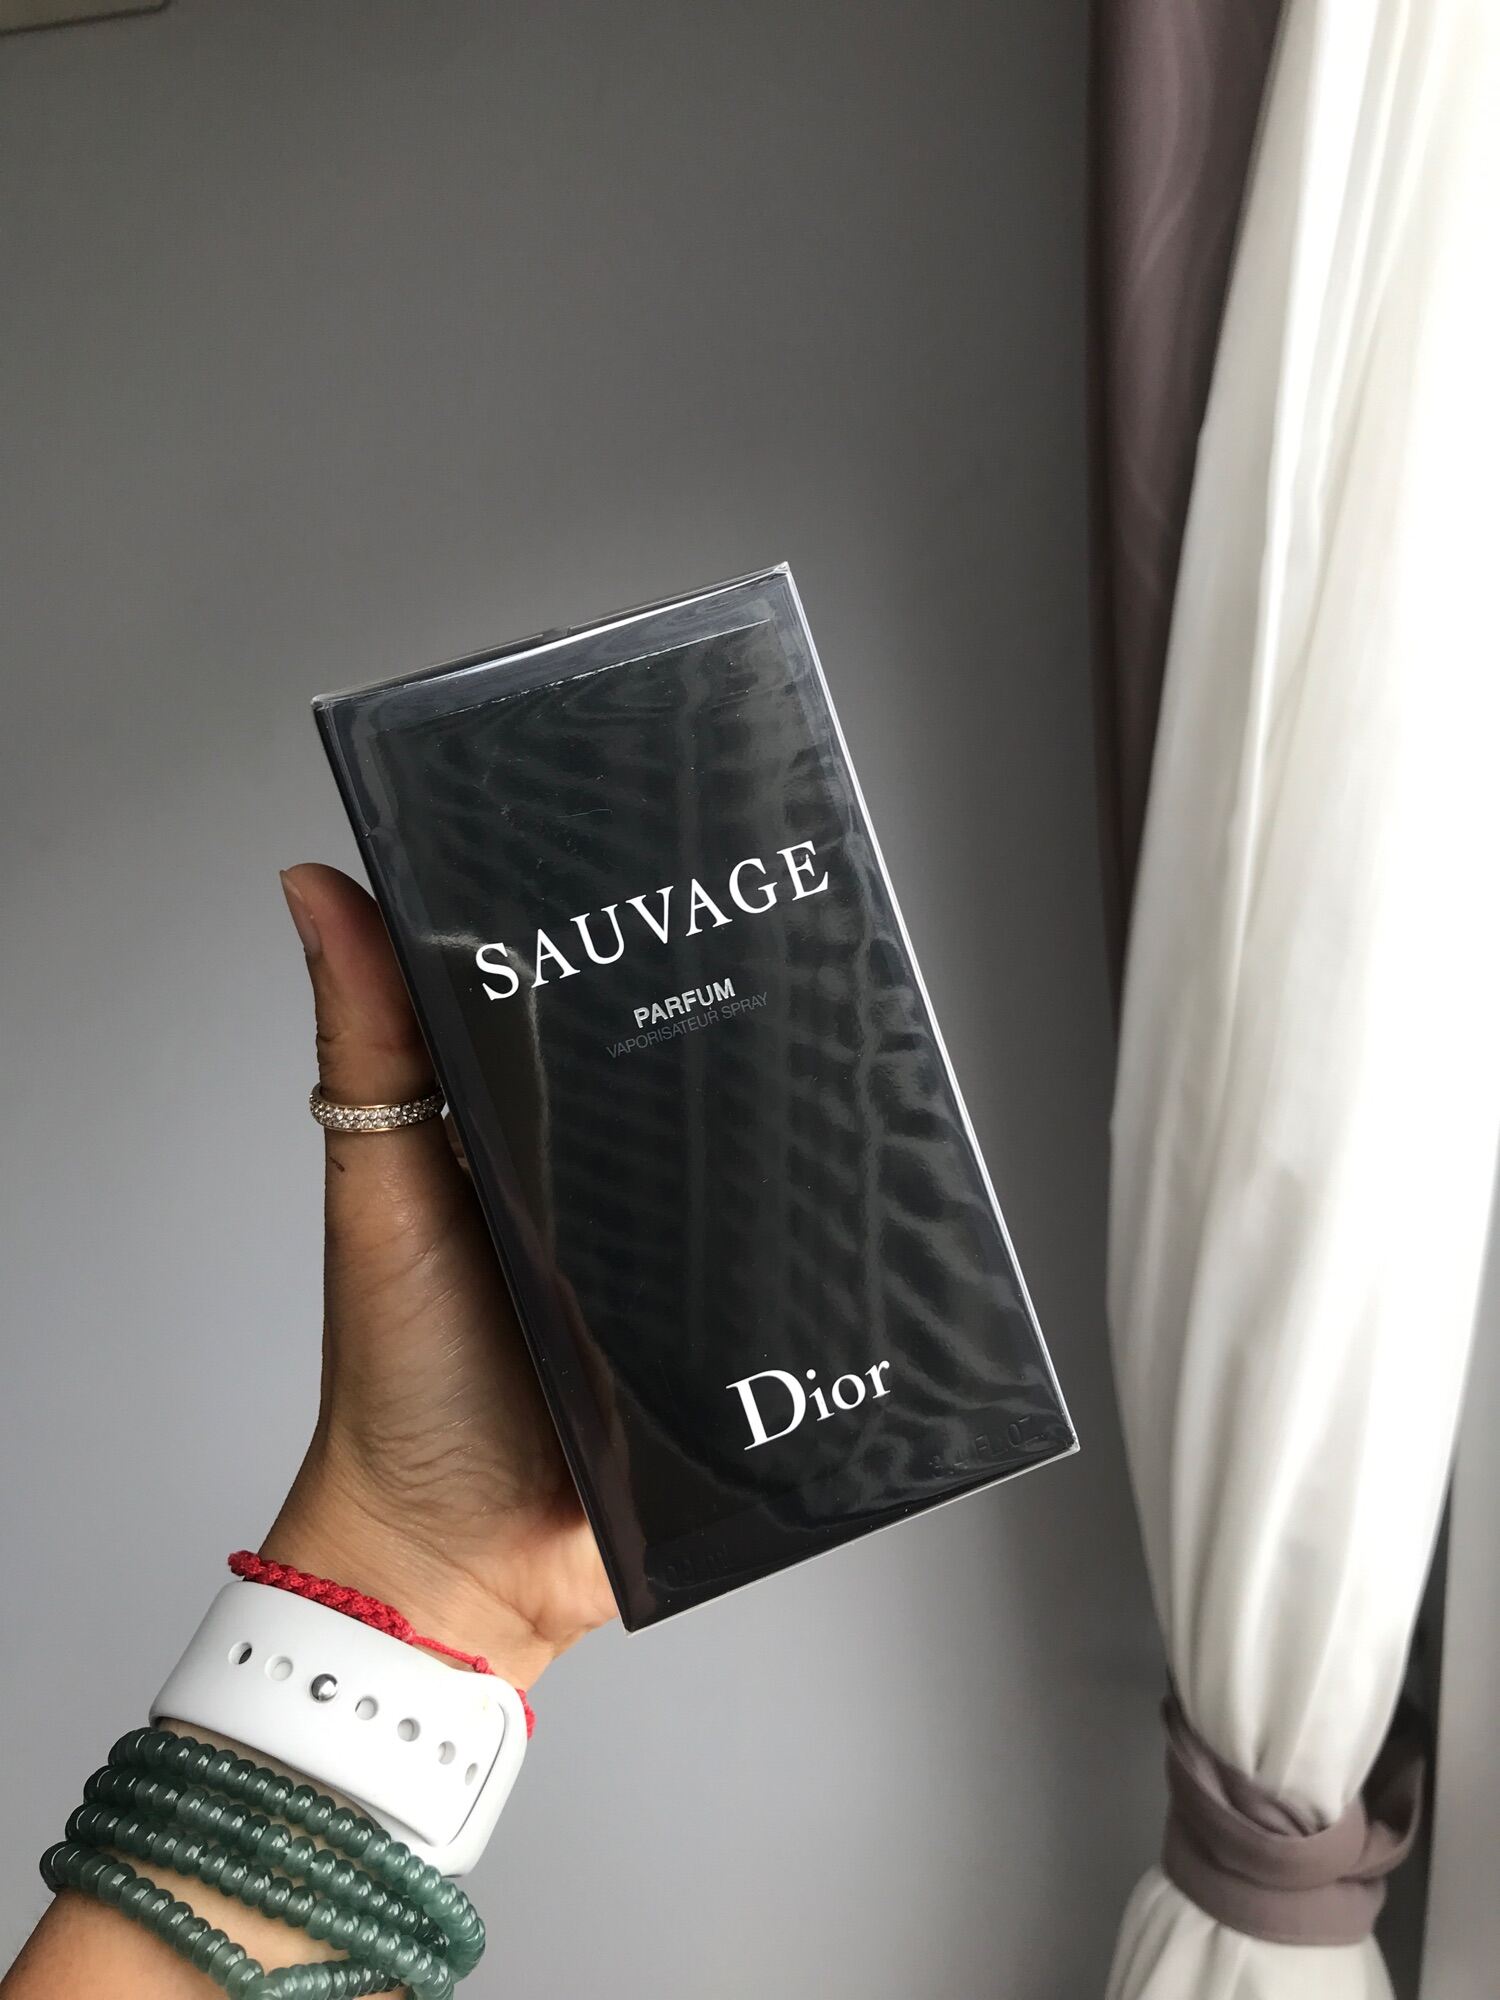 Nước hoa Dior Sauvage giá bao nhiêu Có đắt không